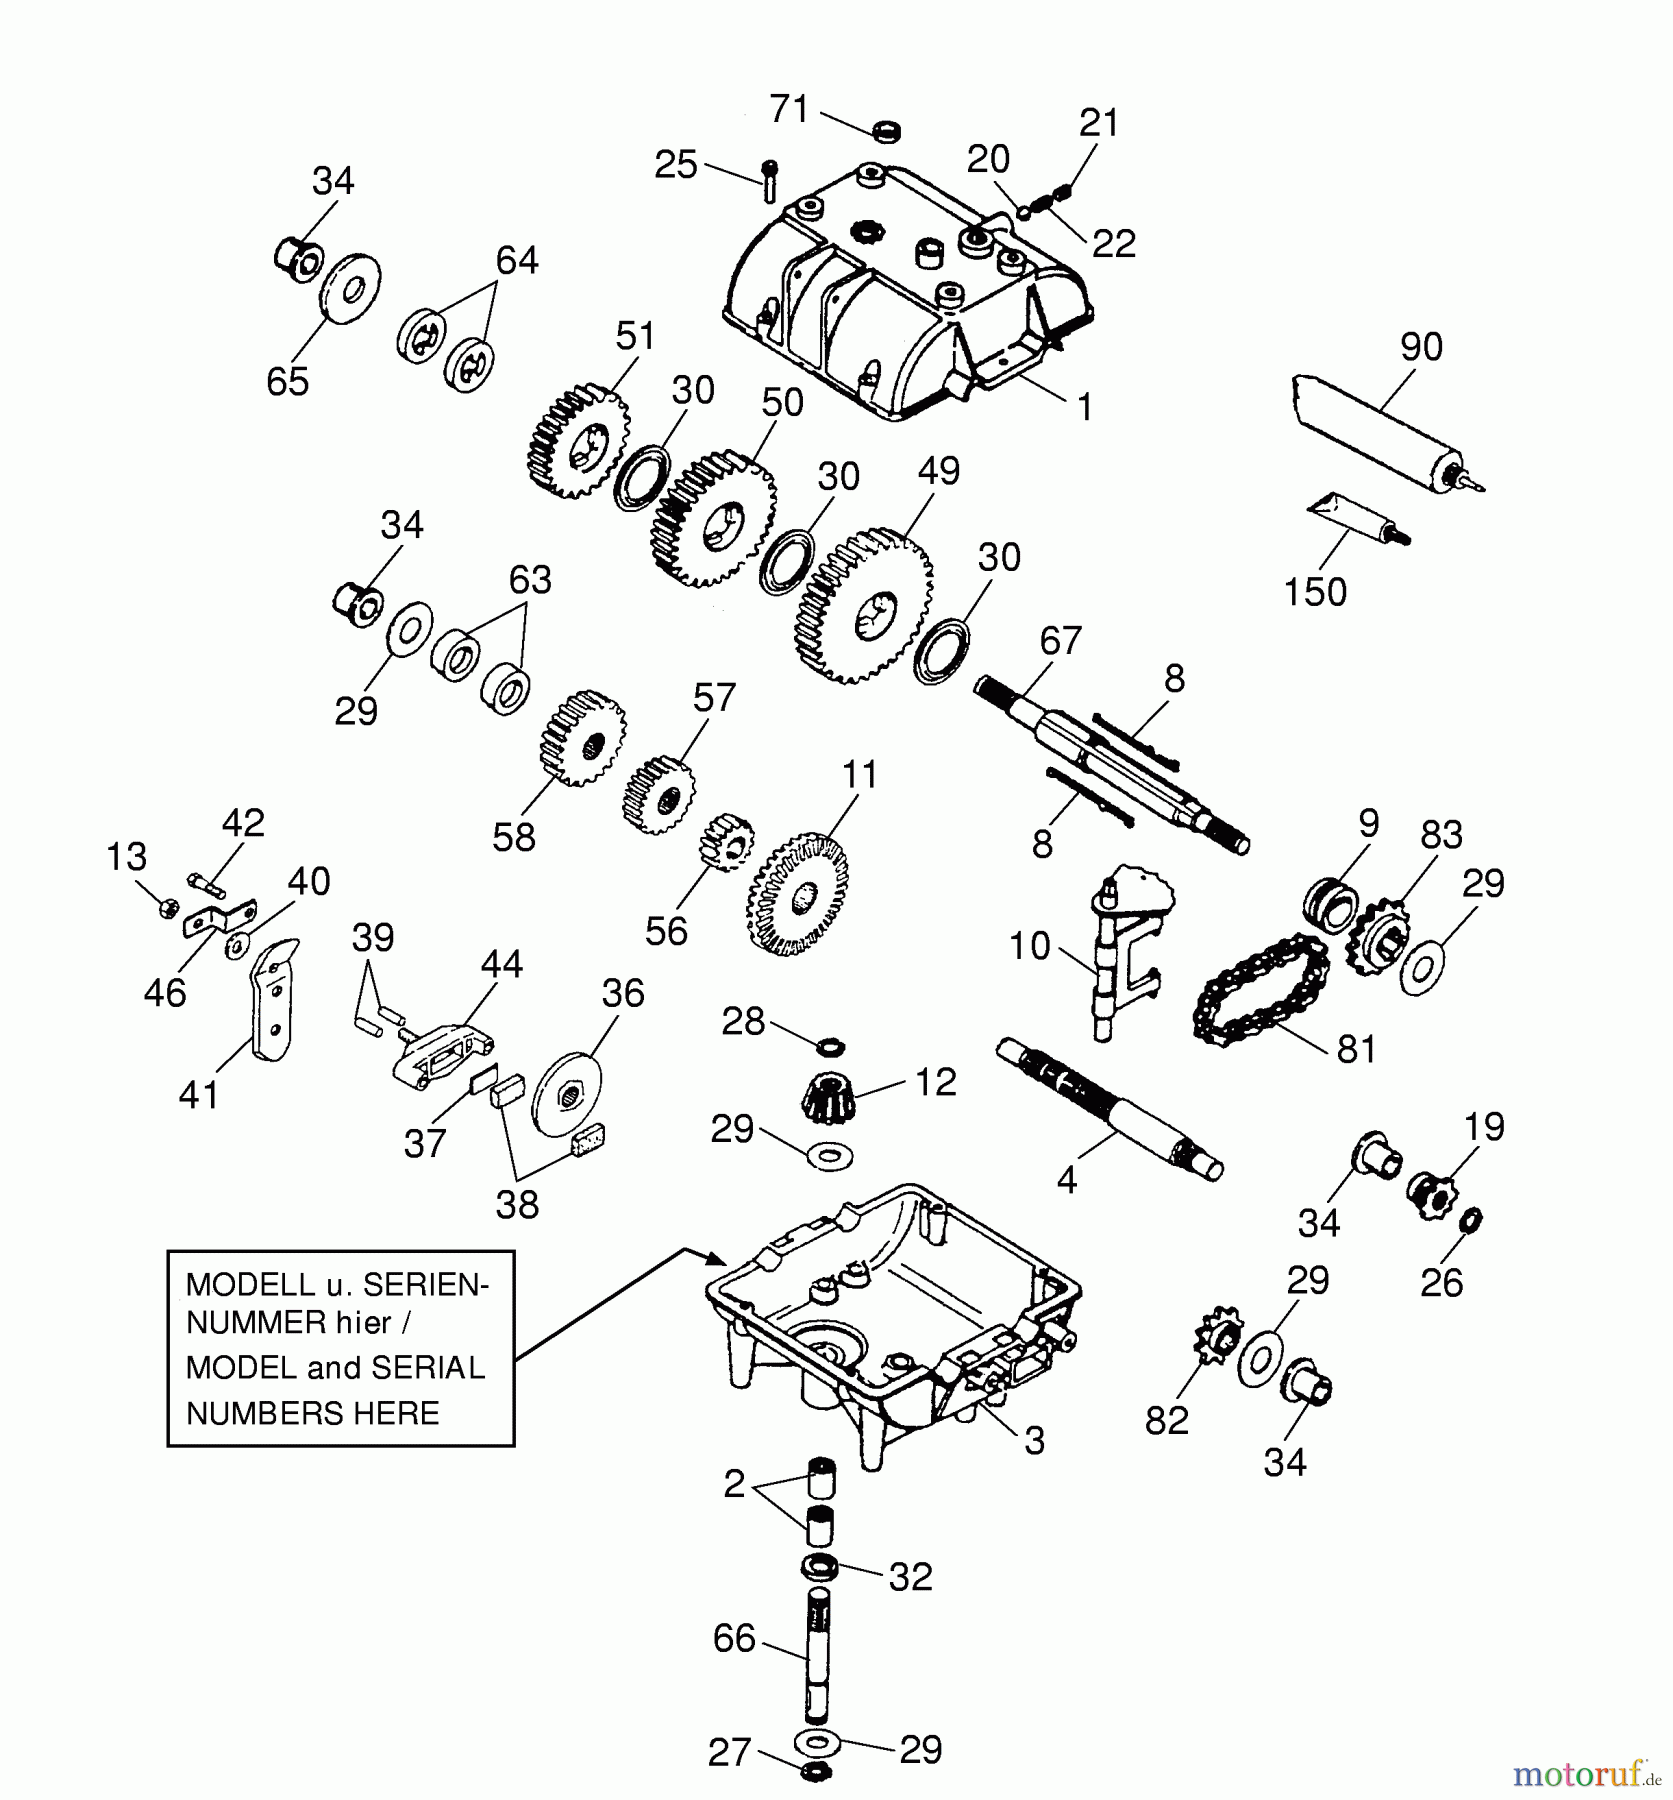  Wolf-Garten Scooter OHV 3 6990000 Series A  (1997) Gearbox